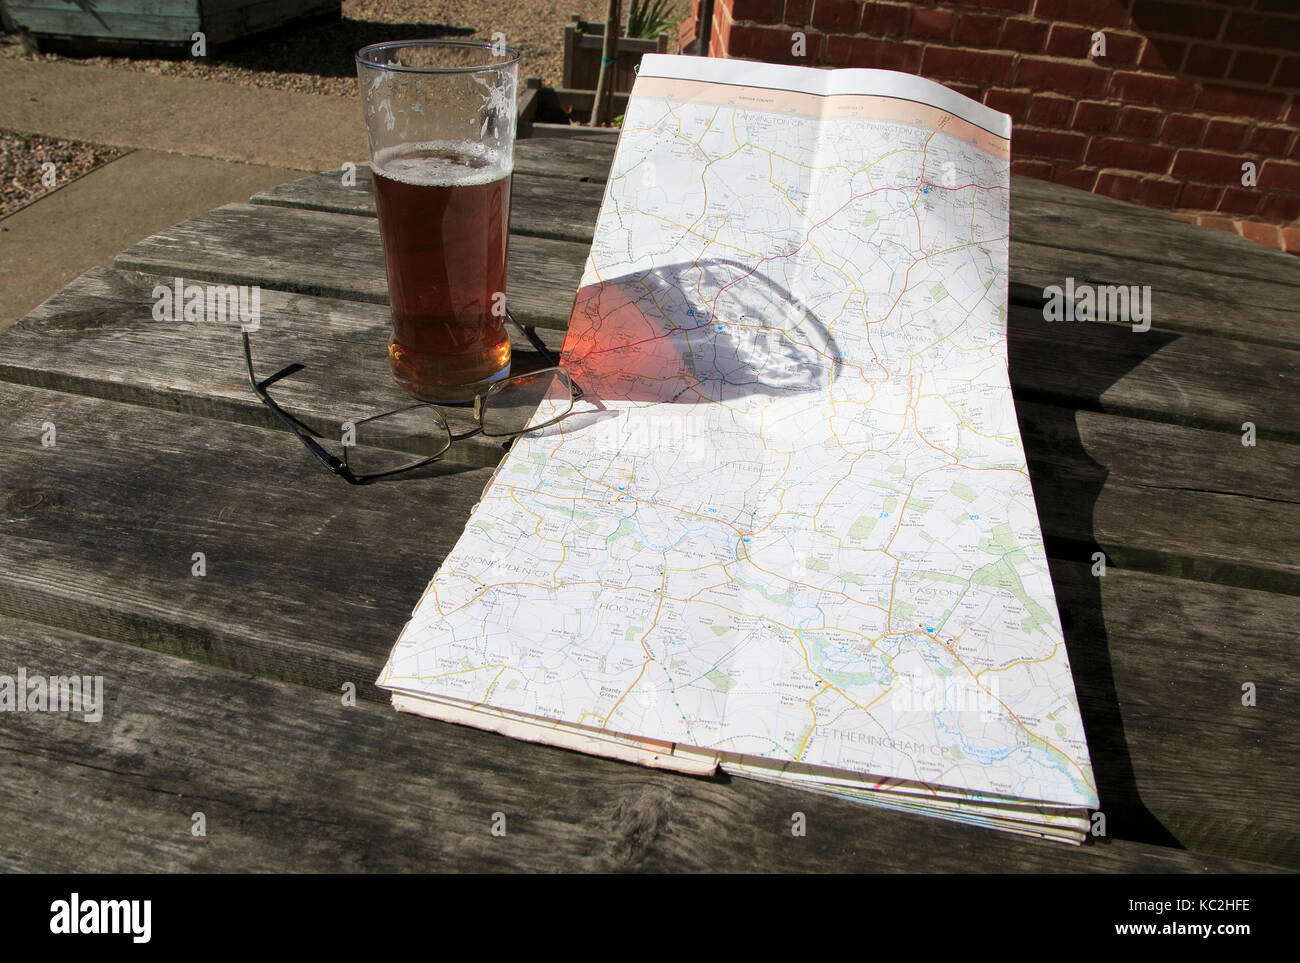 Ordnance Survey Explorer mappa aperto sulla tavola con occhiali e vetro pinta di birra, Suffolk, Inghilterra, Regno Unito Foto Stock